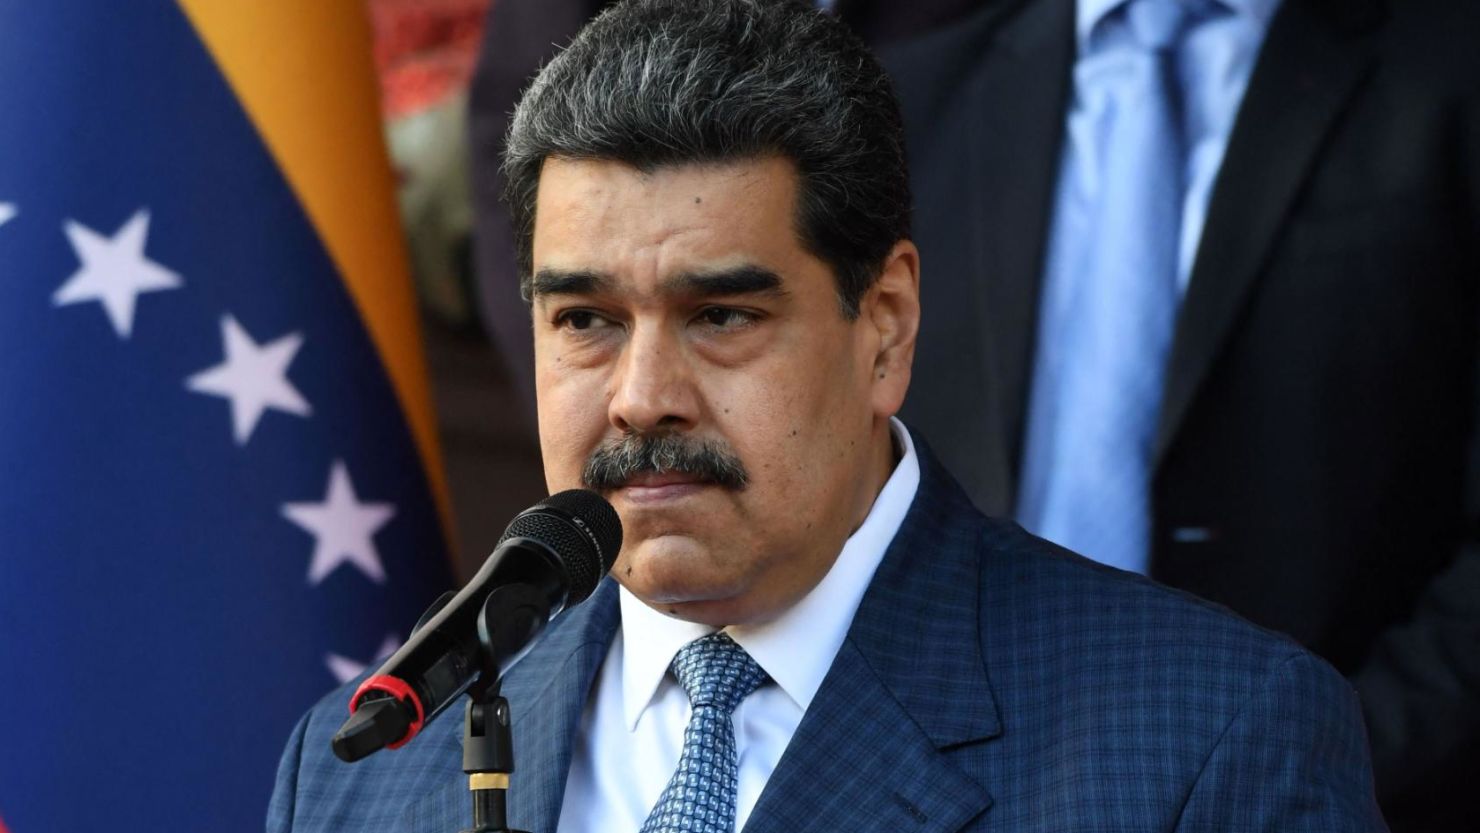 Ο πρόεδρος της Βενεζουέλας Ν.Μαδούρο εξέδωσε διάταγμα με το οποίο η… μισή Γουιάνα γίνεται Πολιτεία της χώρας!